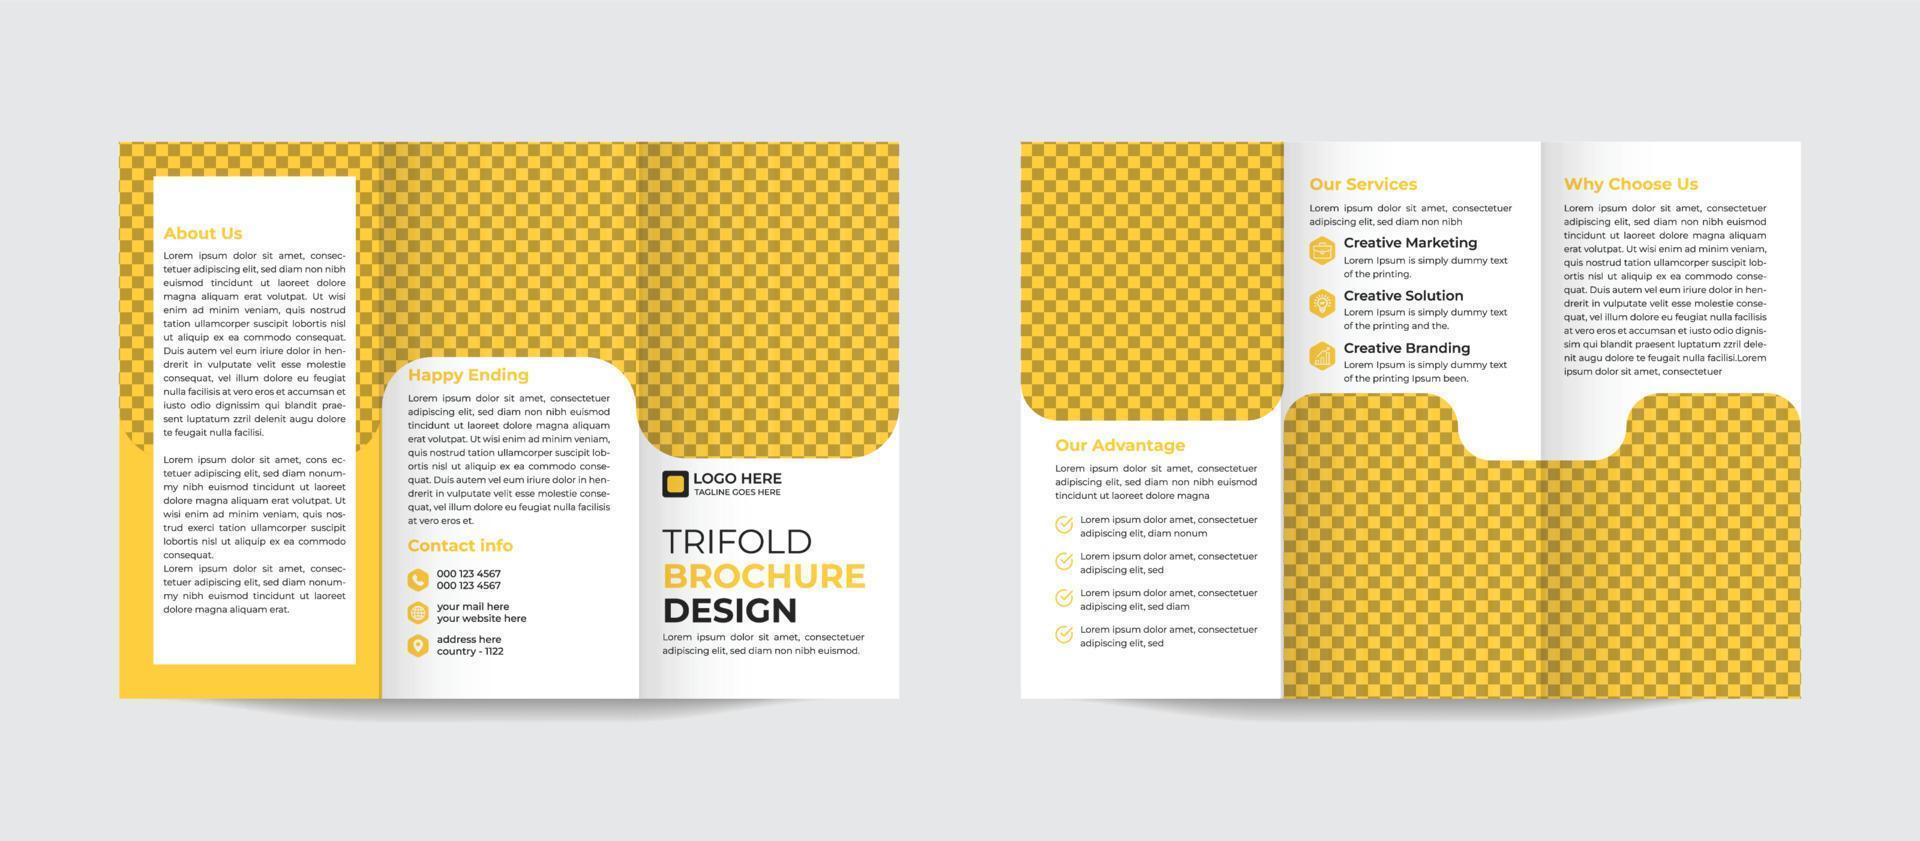 Moderne Trifold-Broschüren-Designvorlage für Ihr Unternehmen, Ihr Unternehmen, Ihr Geschäft, Ihre Werbung, Ihr Marketing, Ihre Agentur und Ihr Internetgeschäft. Pro-Vektor vektor